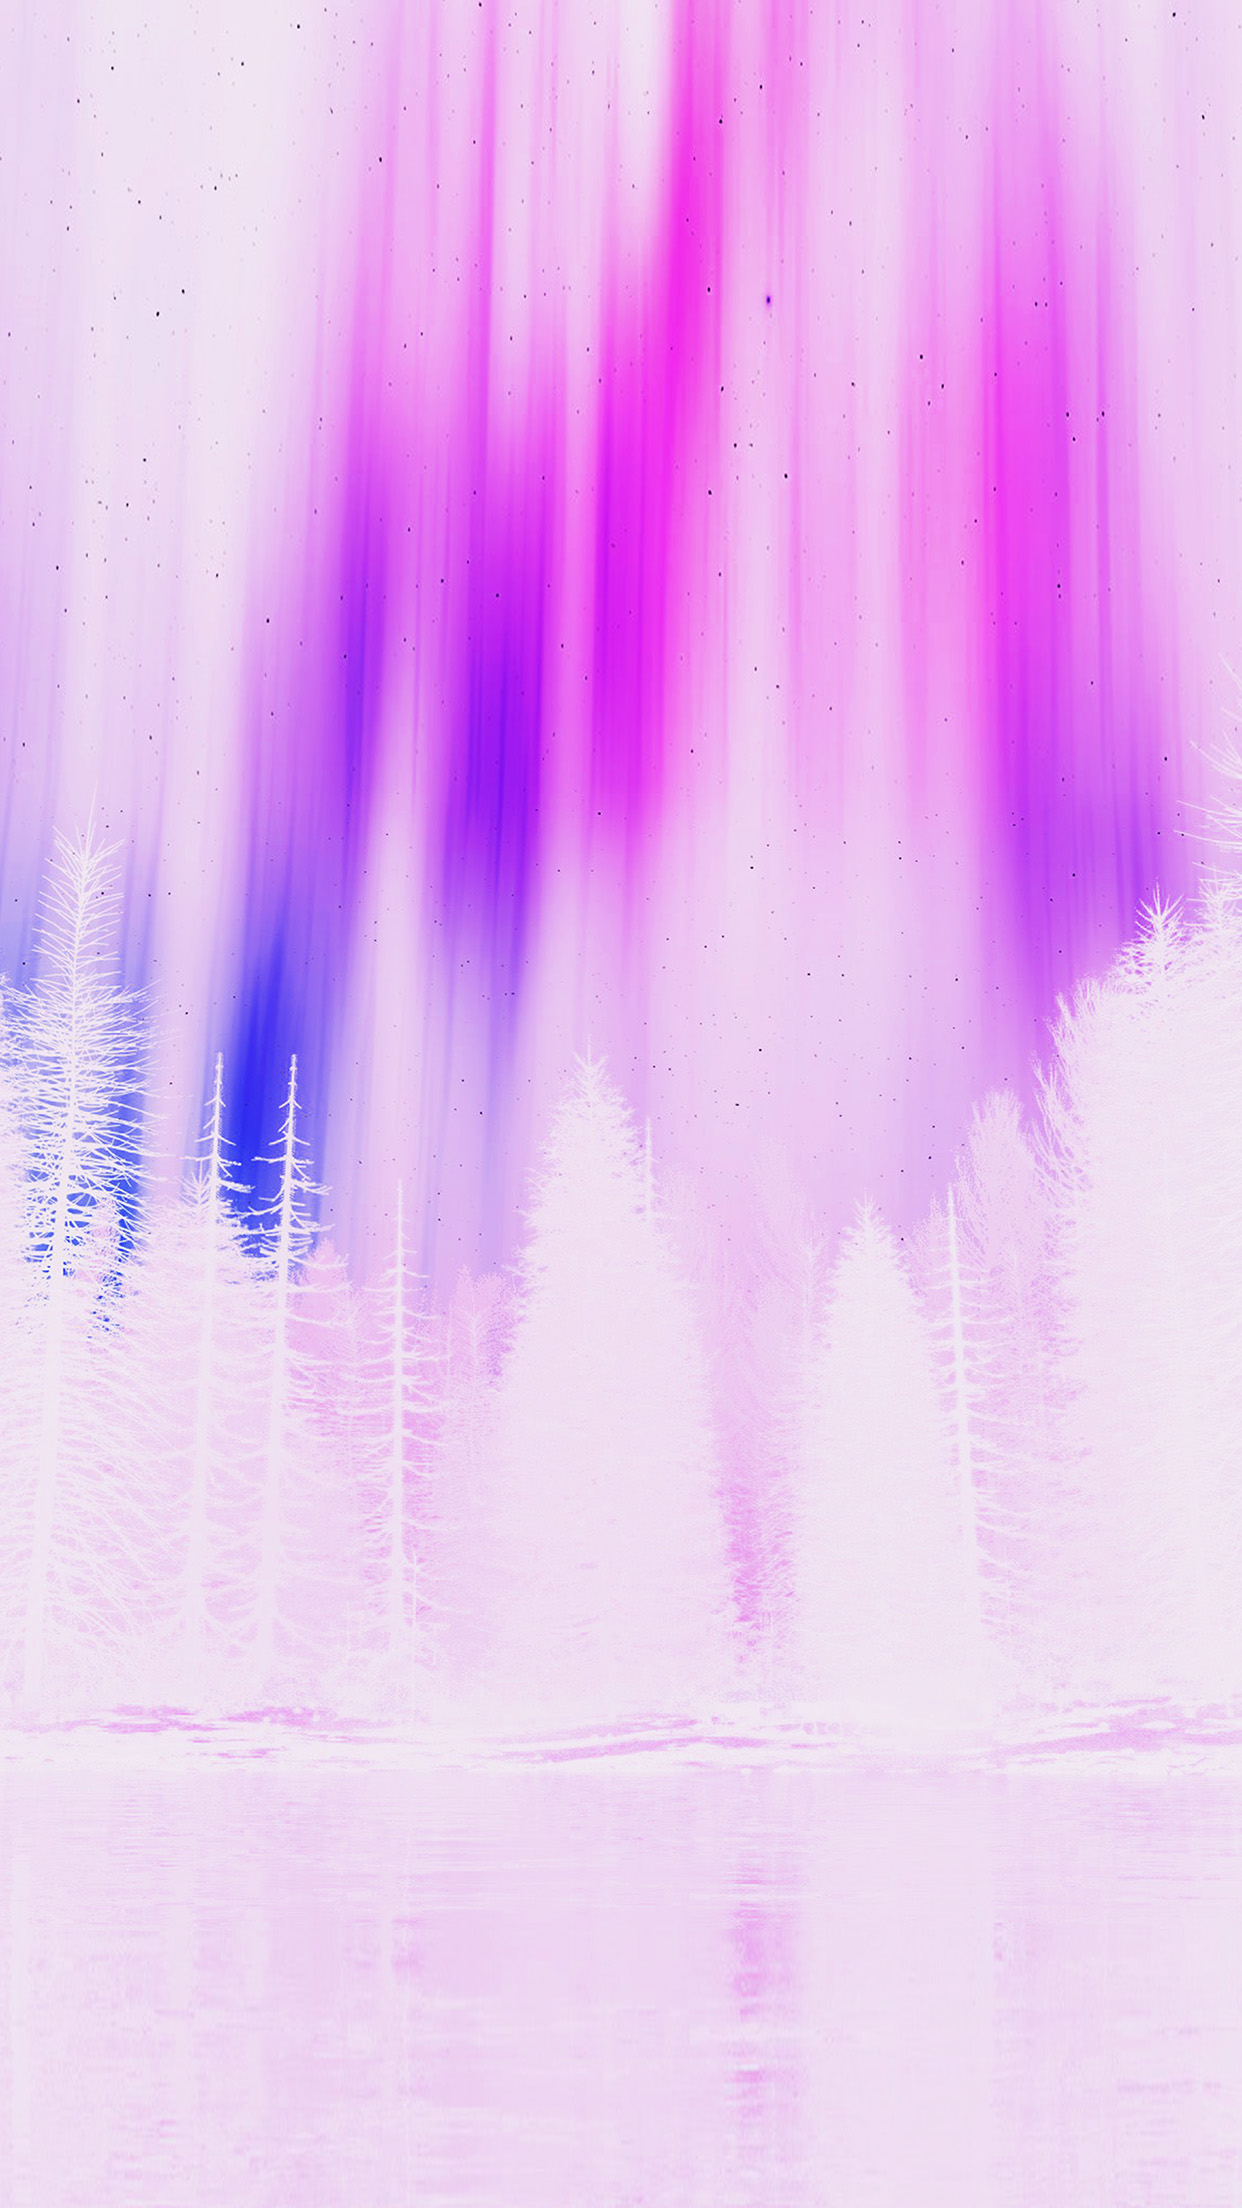 1242x2208 | iPhone11 wallpaper | ao06-aurora-night-sky-white-pinknature-art